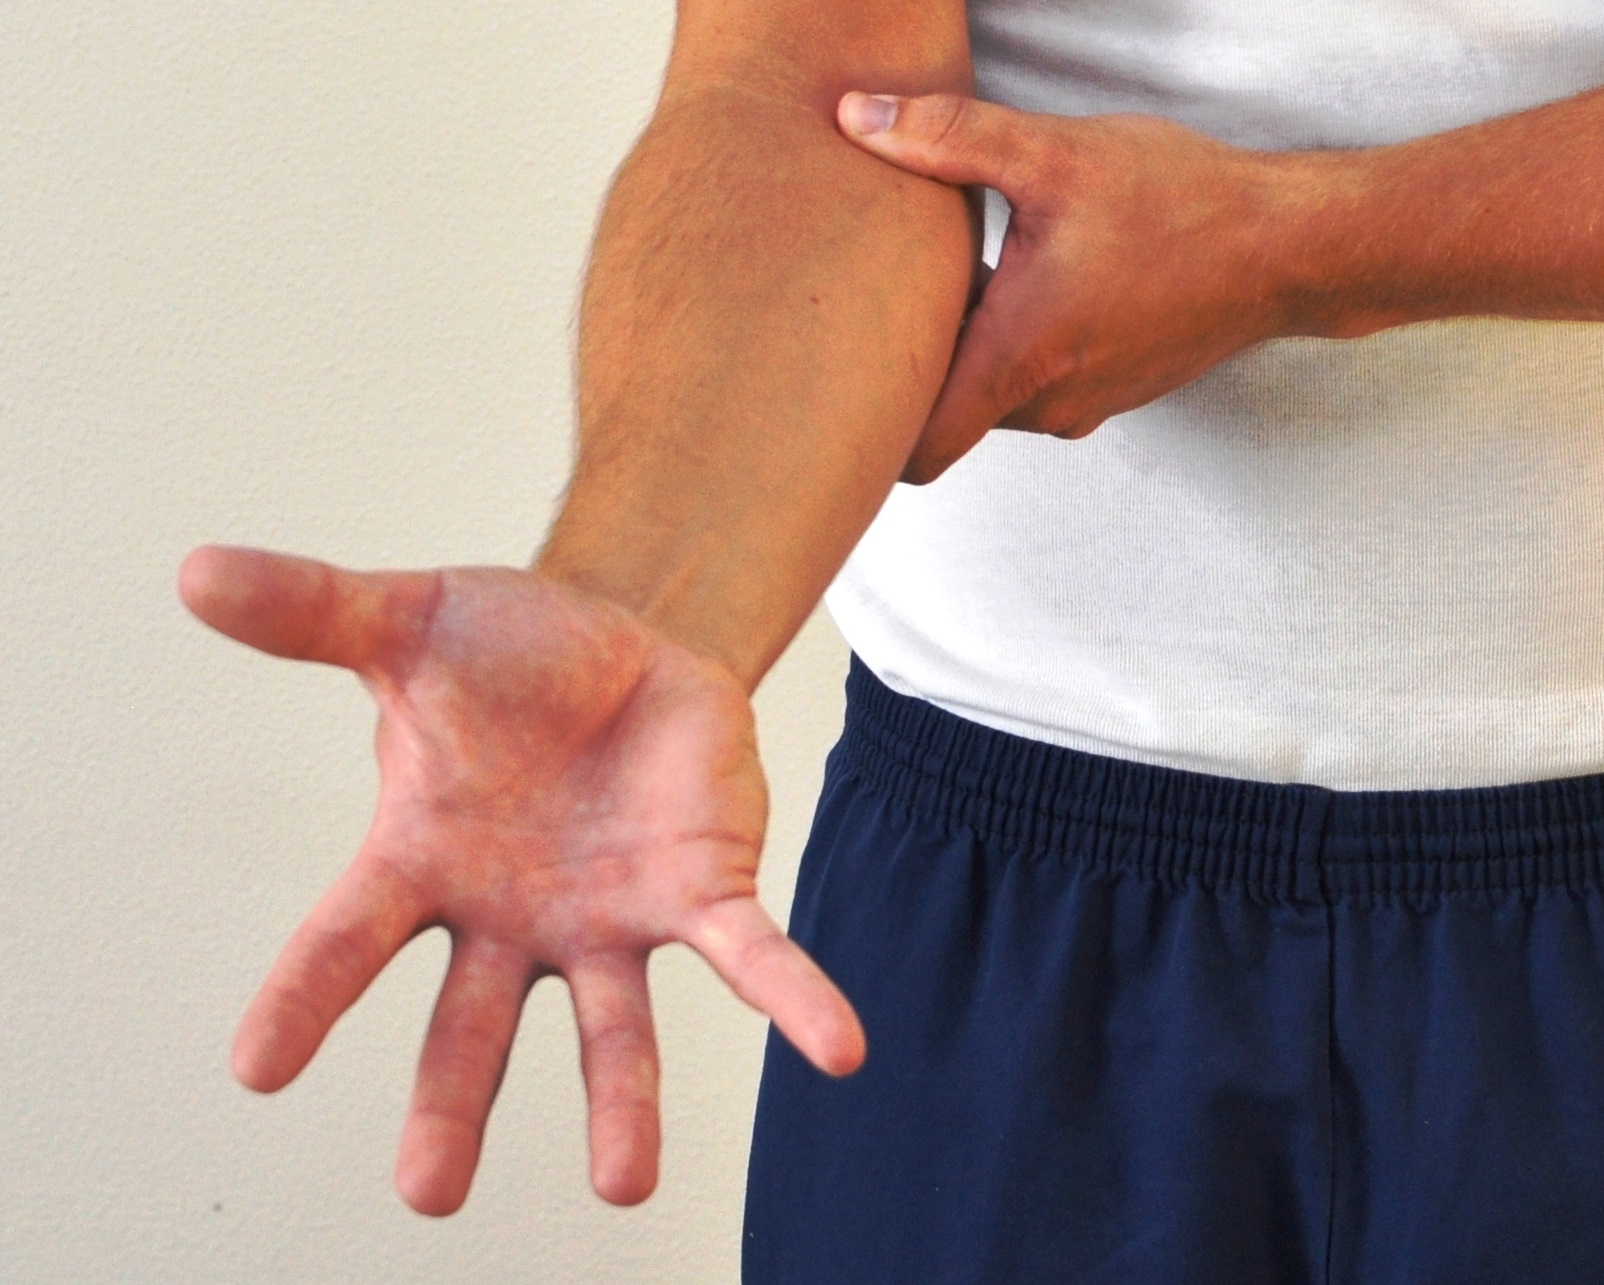 Underarm med strakte og spredte fingre - håndfladen vender opad.